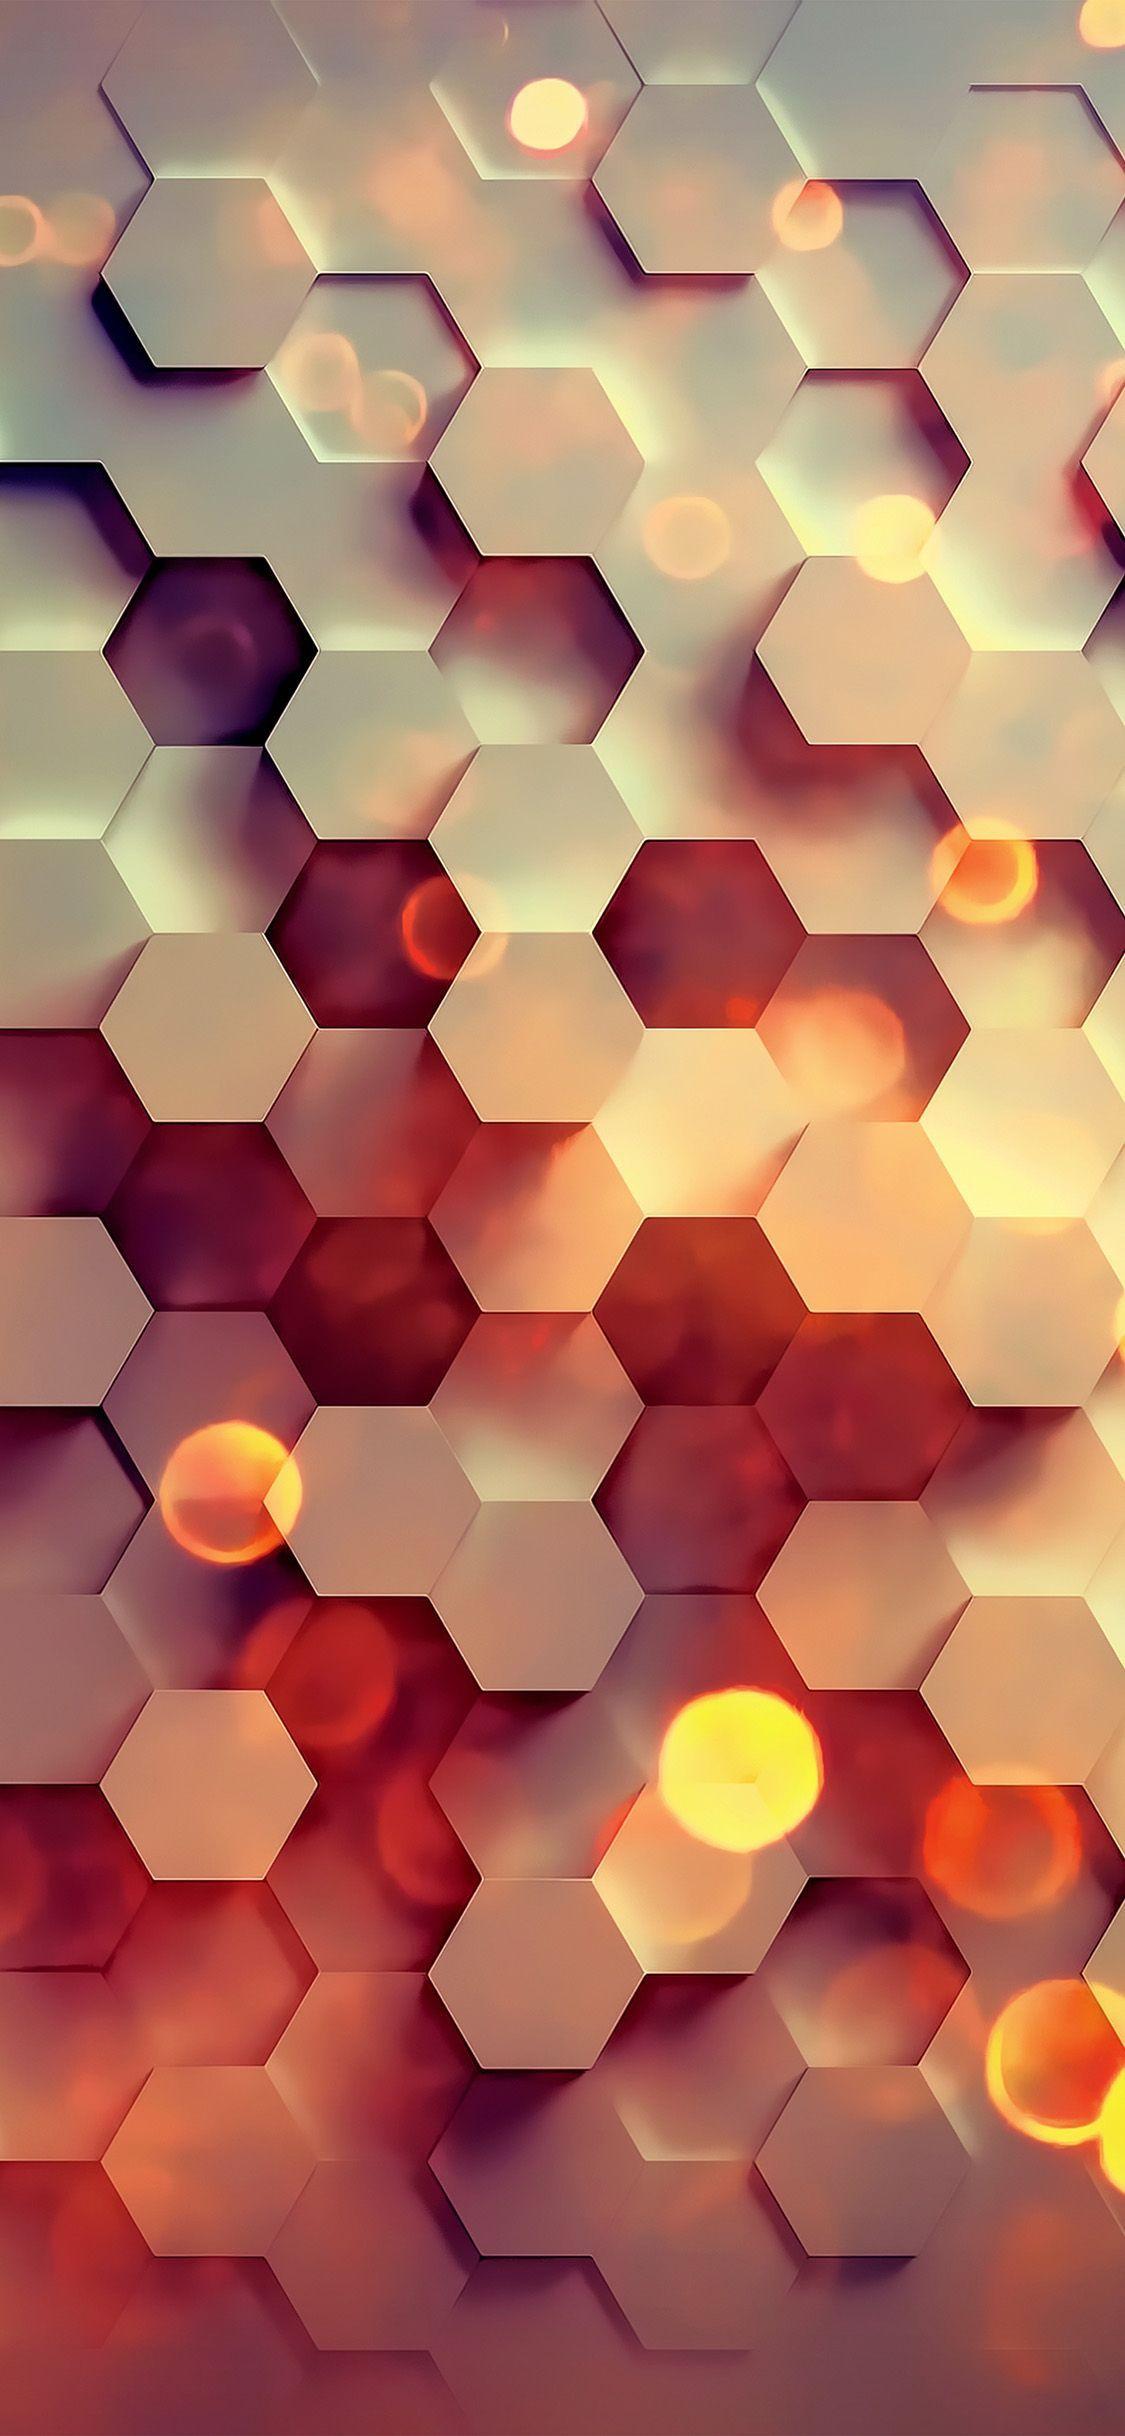 3D Hexagon IPhone Wallpaper  IPhone Wallpapers  iPhone Wallpapers